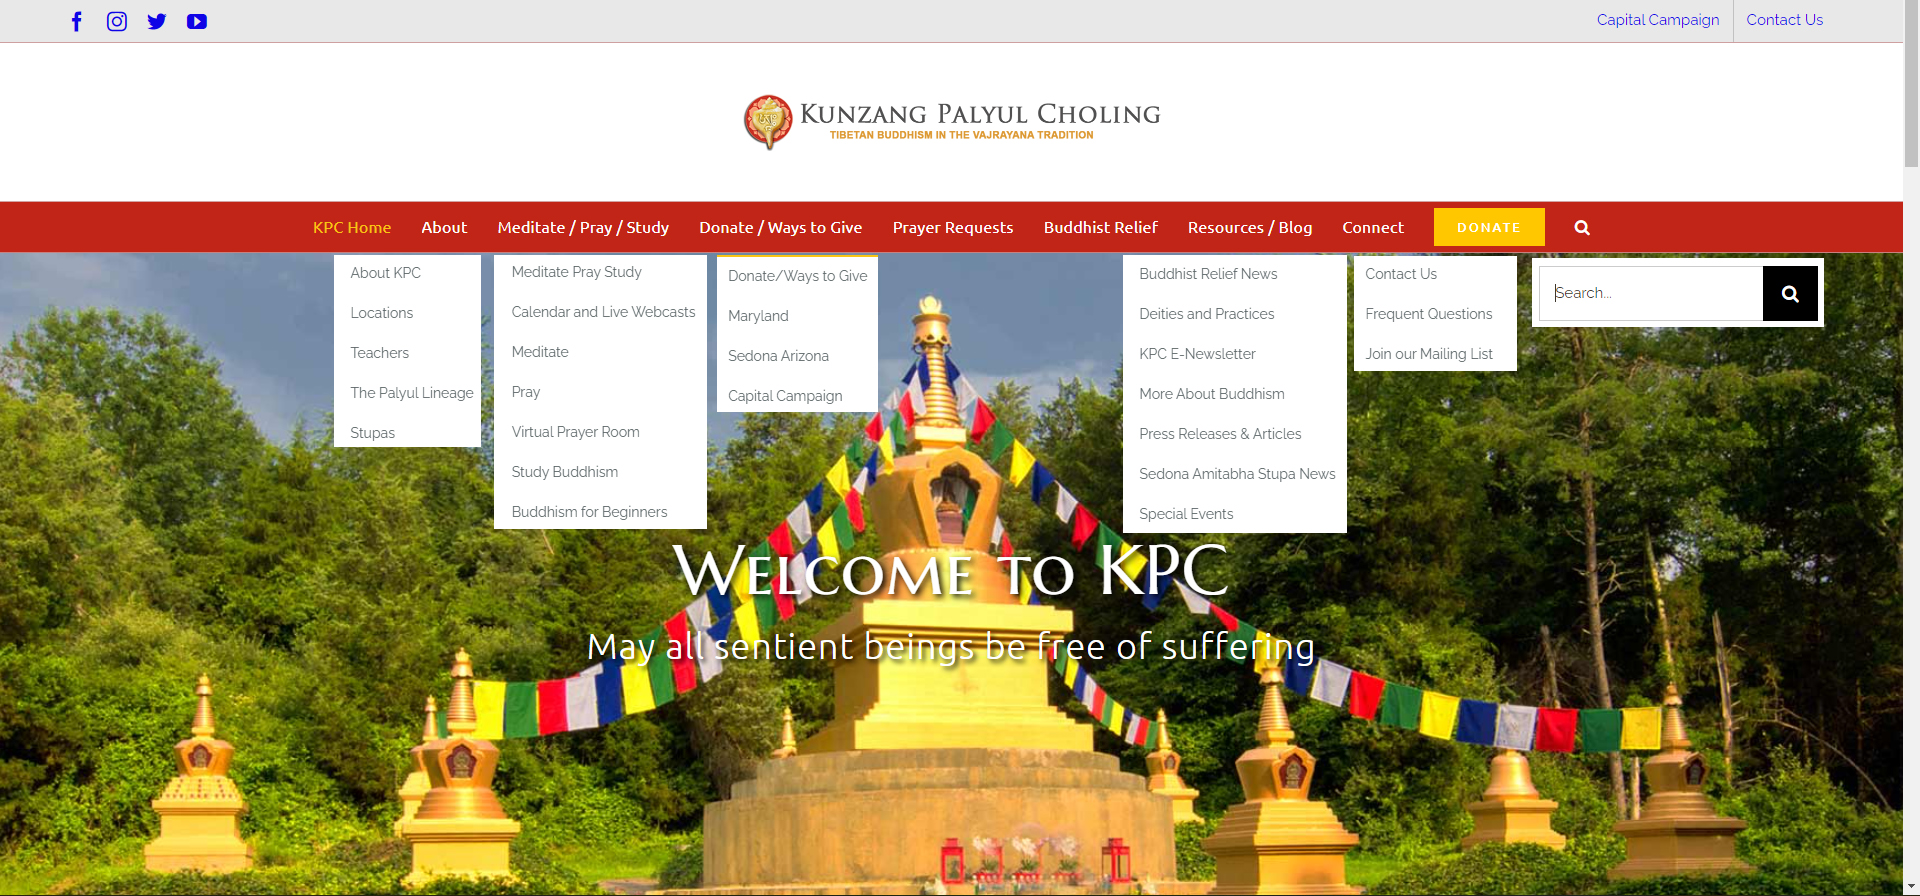 Homepage with menus